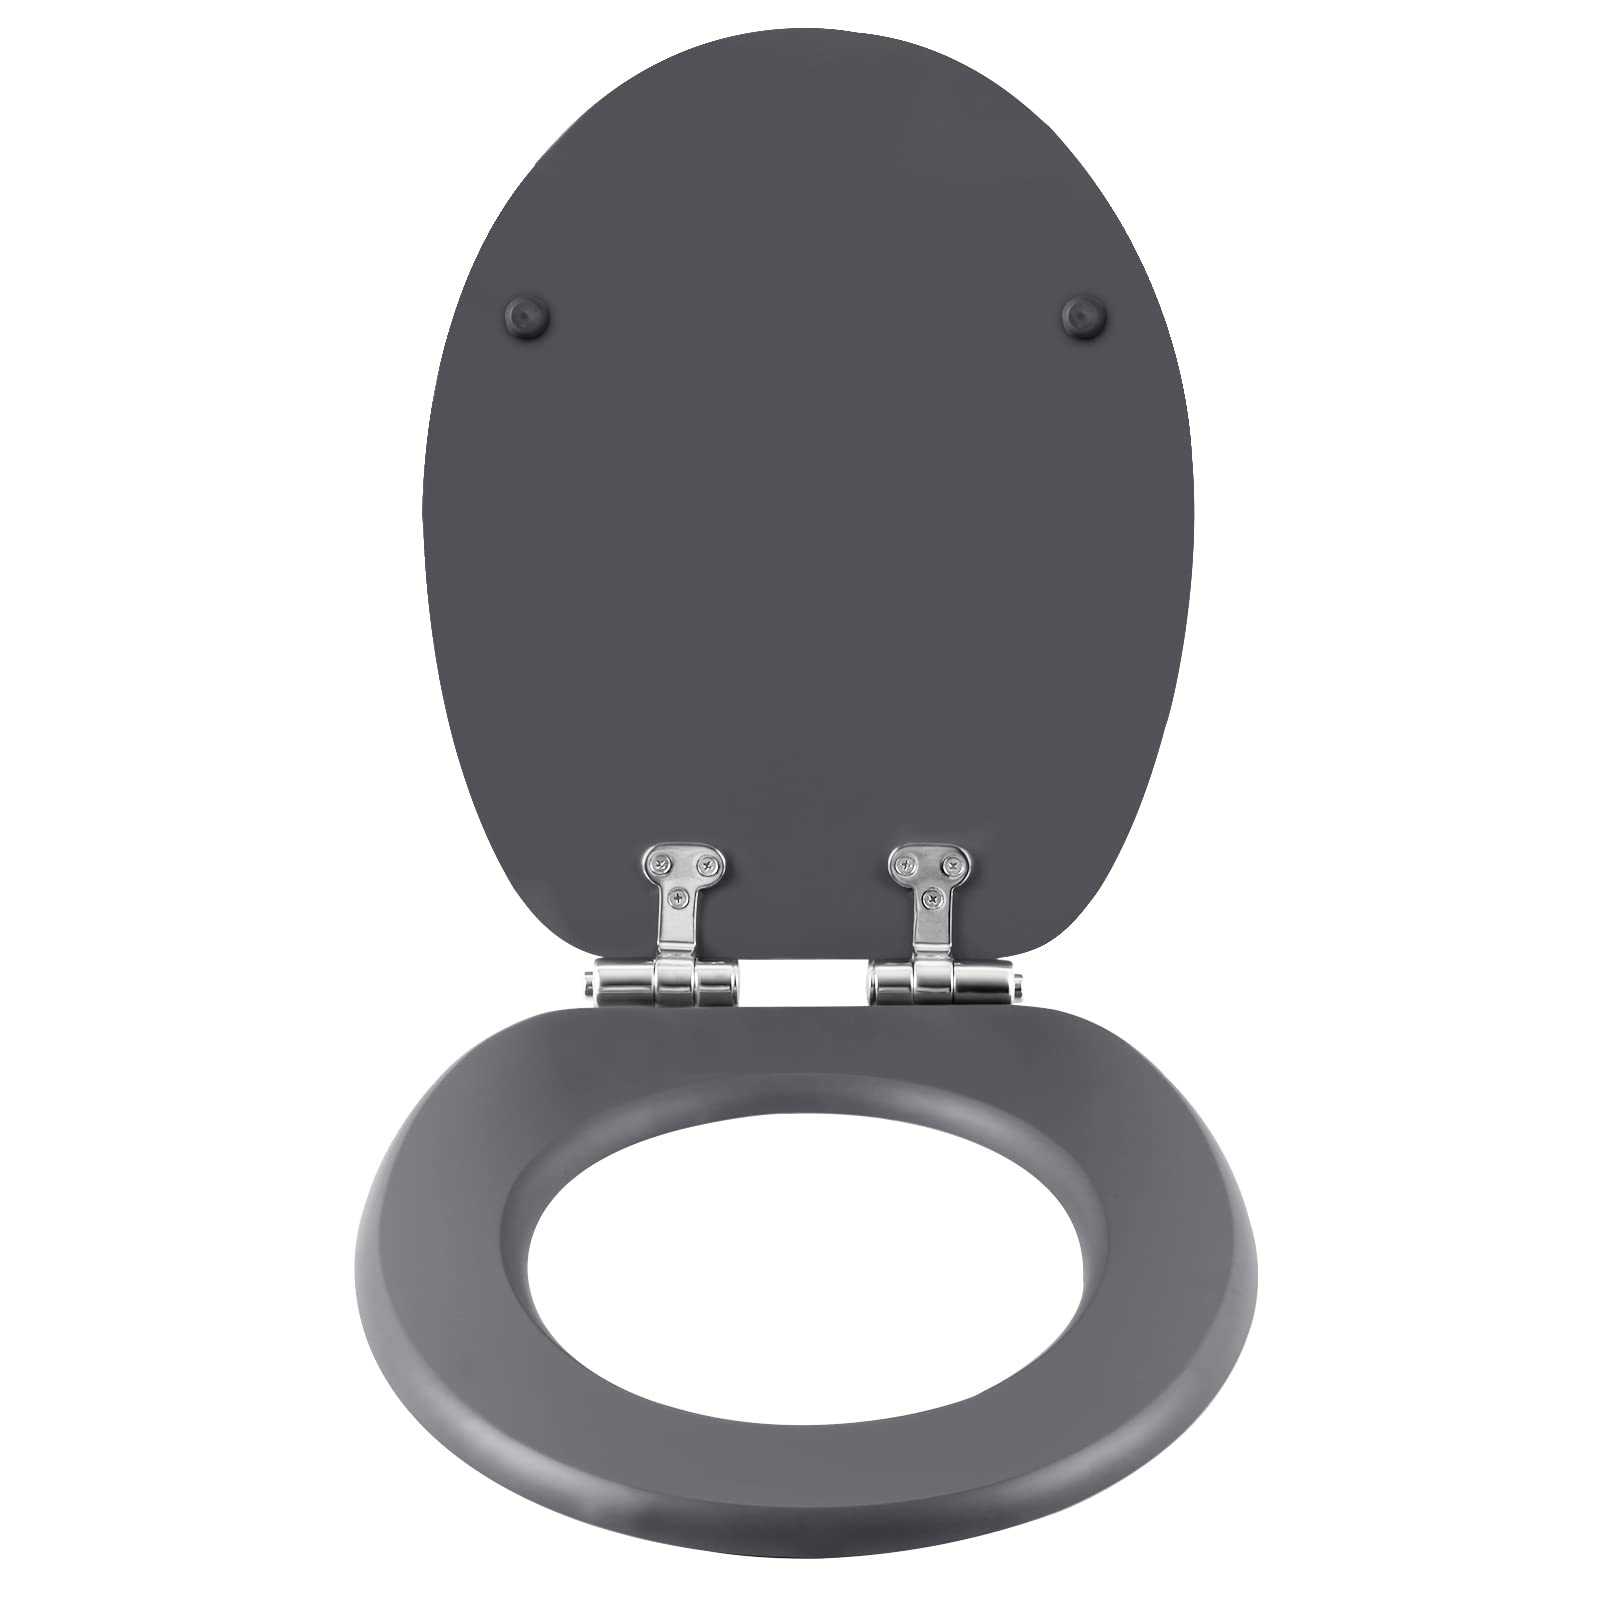 eSituro Toilettendeckel mit Absenkautomatik Holz, WC Sitz mit Quick-Release-Funktion für leichte Reinigung, einfache Montage, antibakterieller Toilettensitz Motiv, MDF,Anthrazit